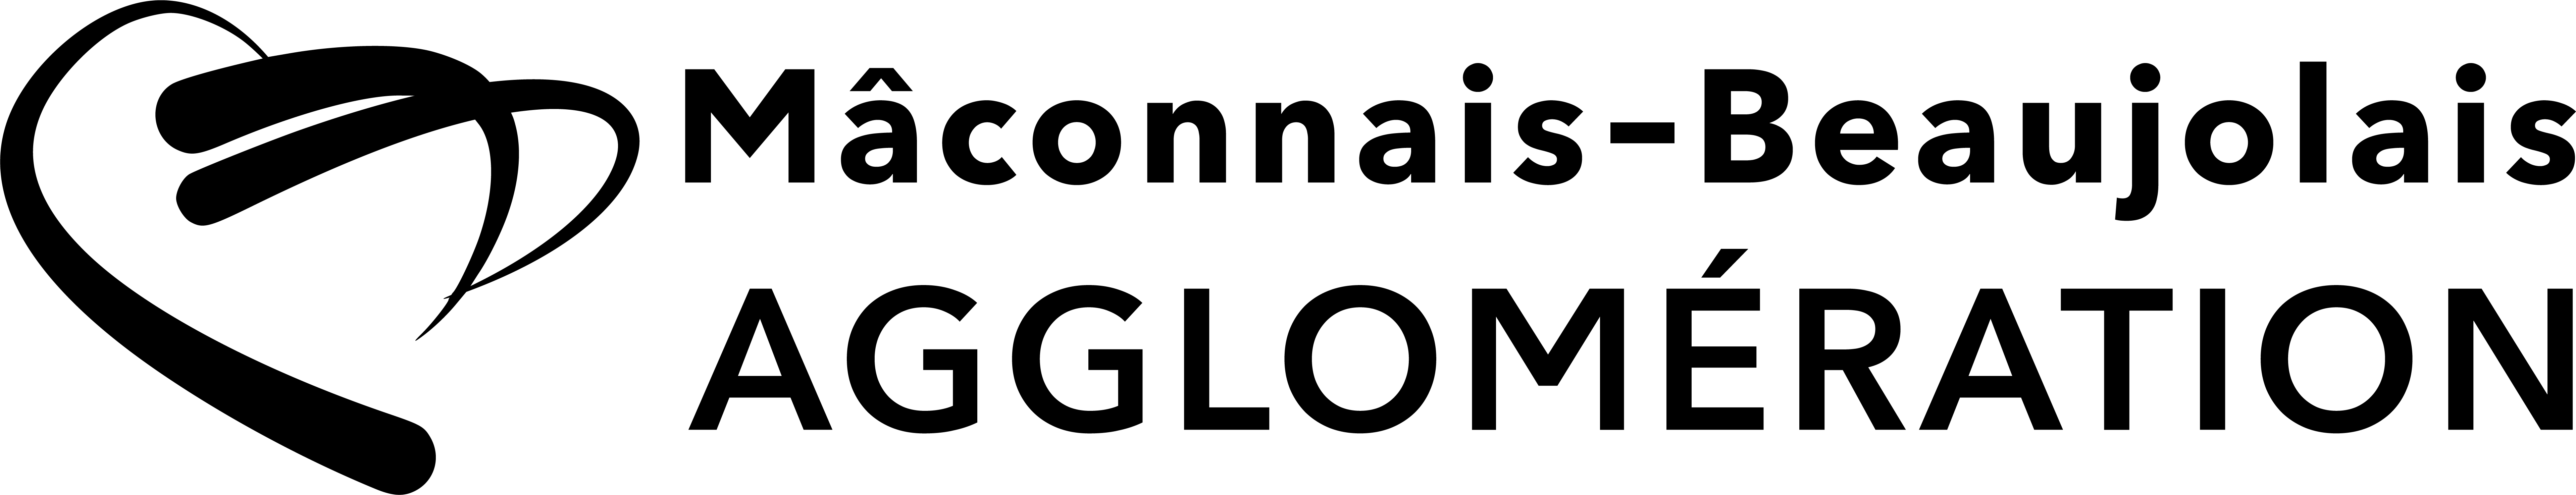 Logo MBA noir